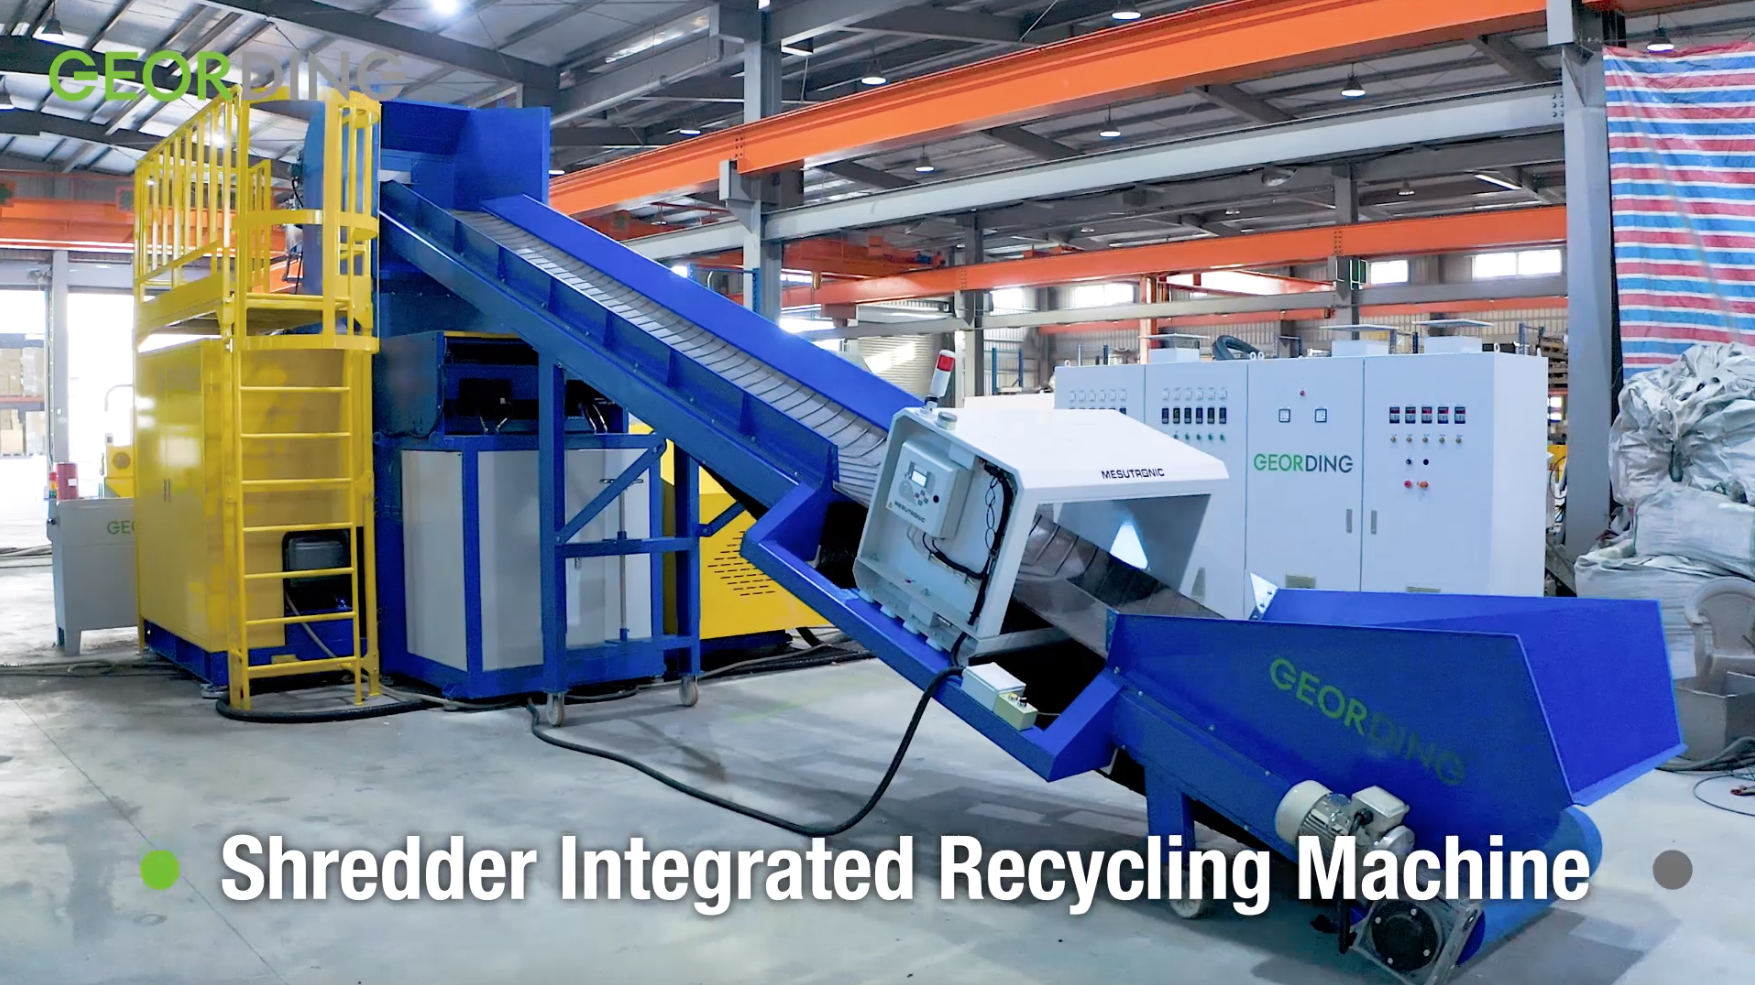 Trituradora integrada de la máquina de reciclaje